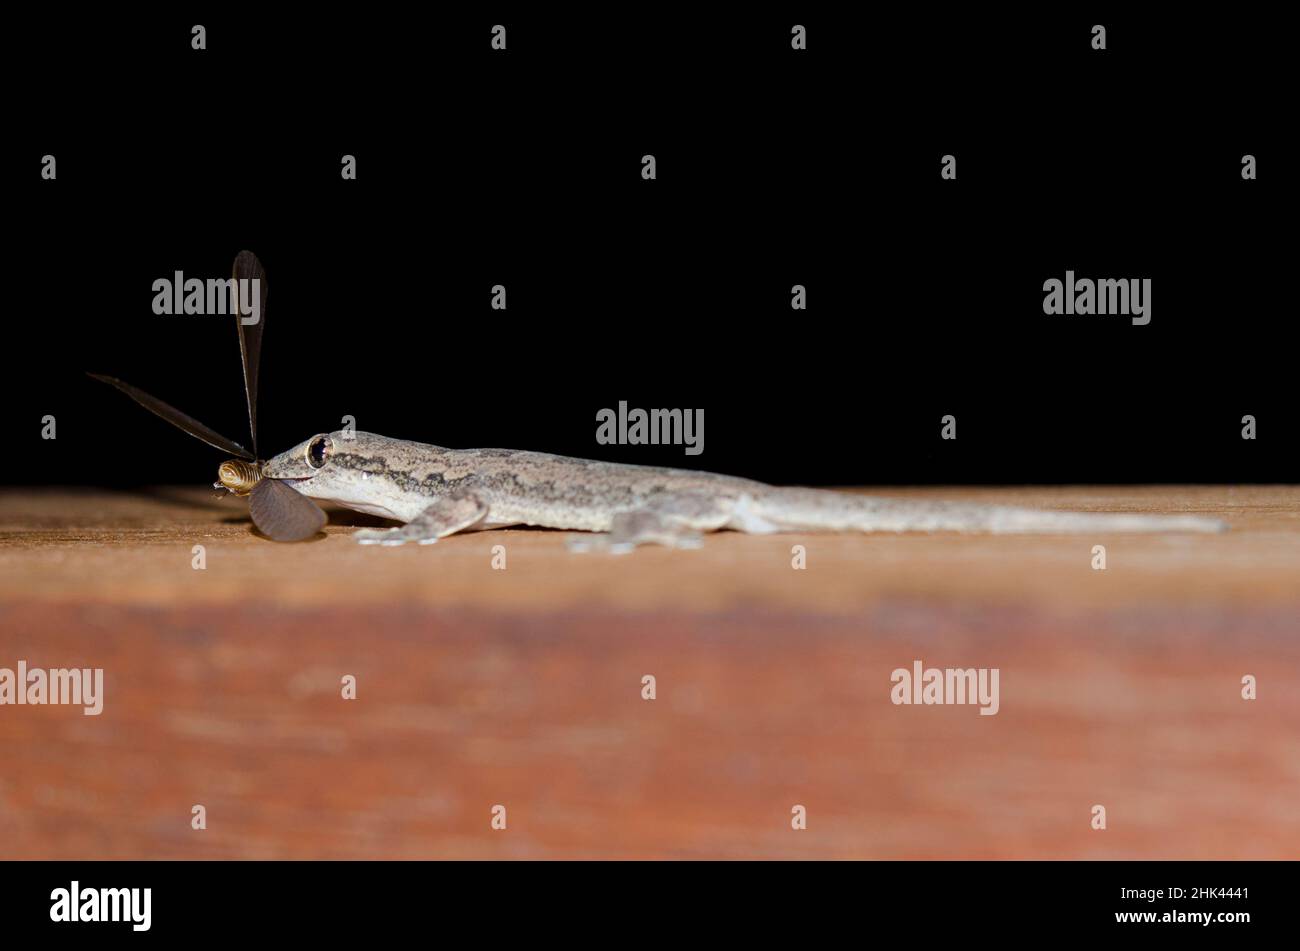 Maison à queue plate Gecko, Hemidactylus platyurus, manger des fourmis, famille des formicidae, Pering,Gianyar, Bali, Indonésie Banque D'Images